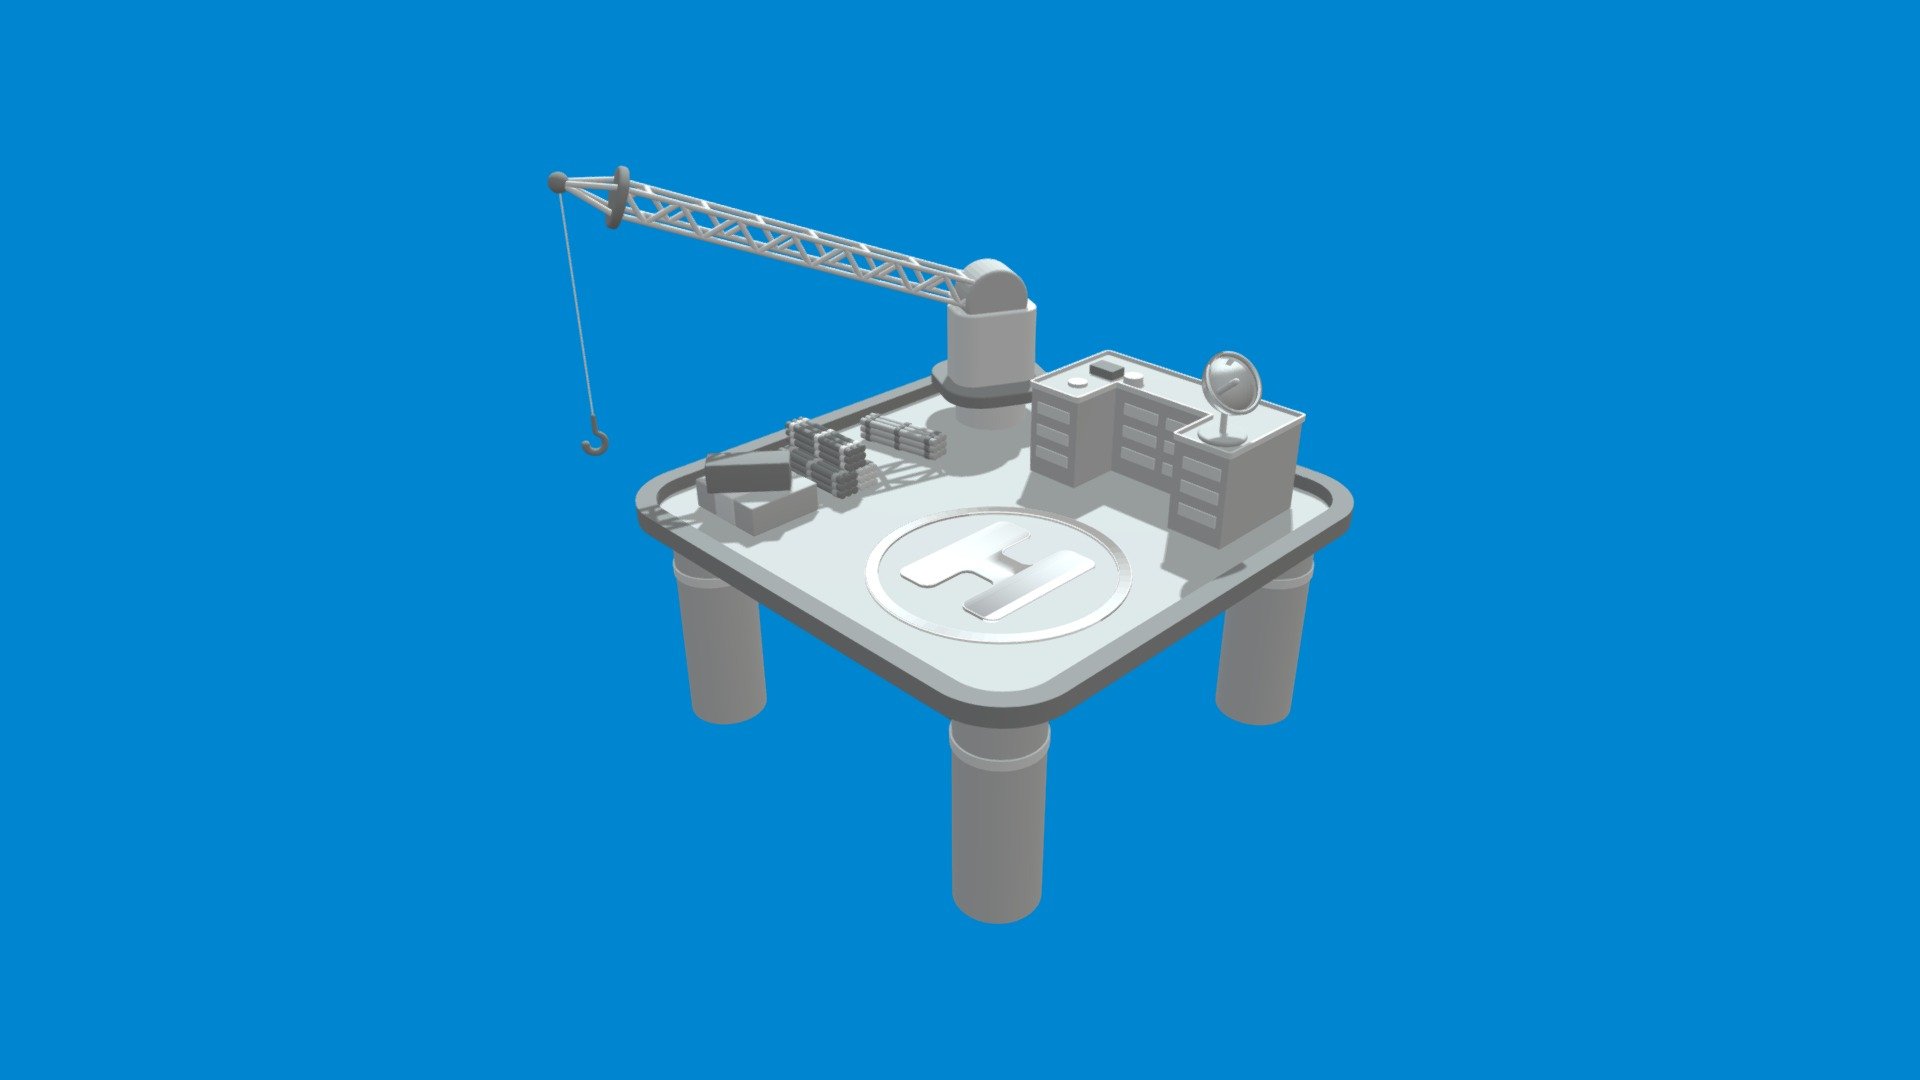 Offshore construction platform - Offshore Platform - Download Free 3D model by hanchuzhi 3d model